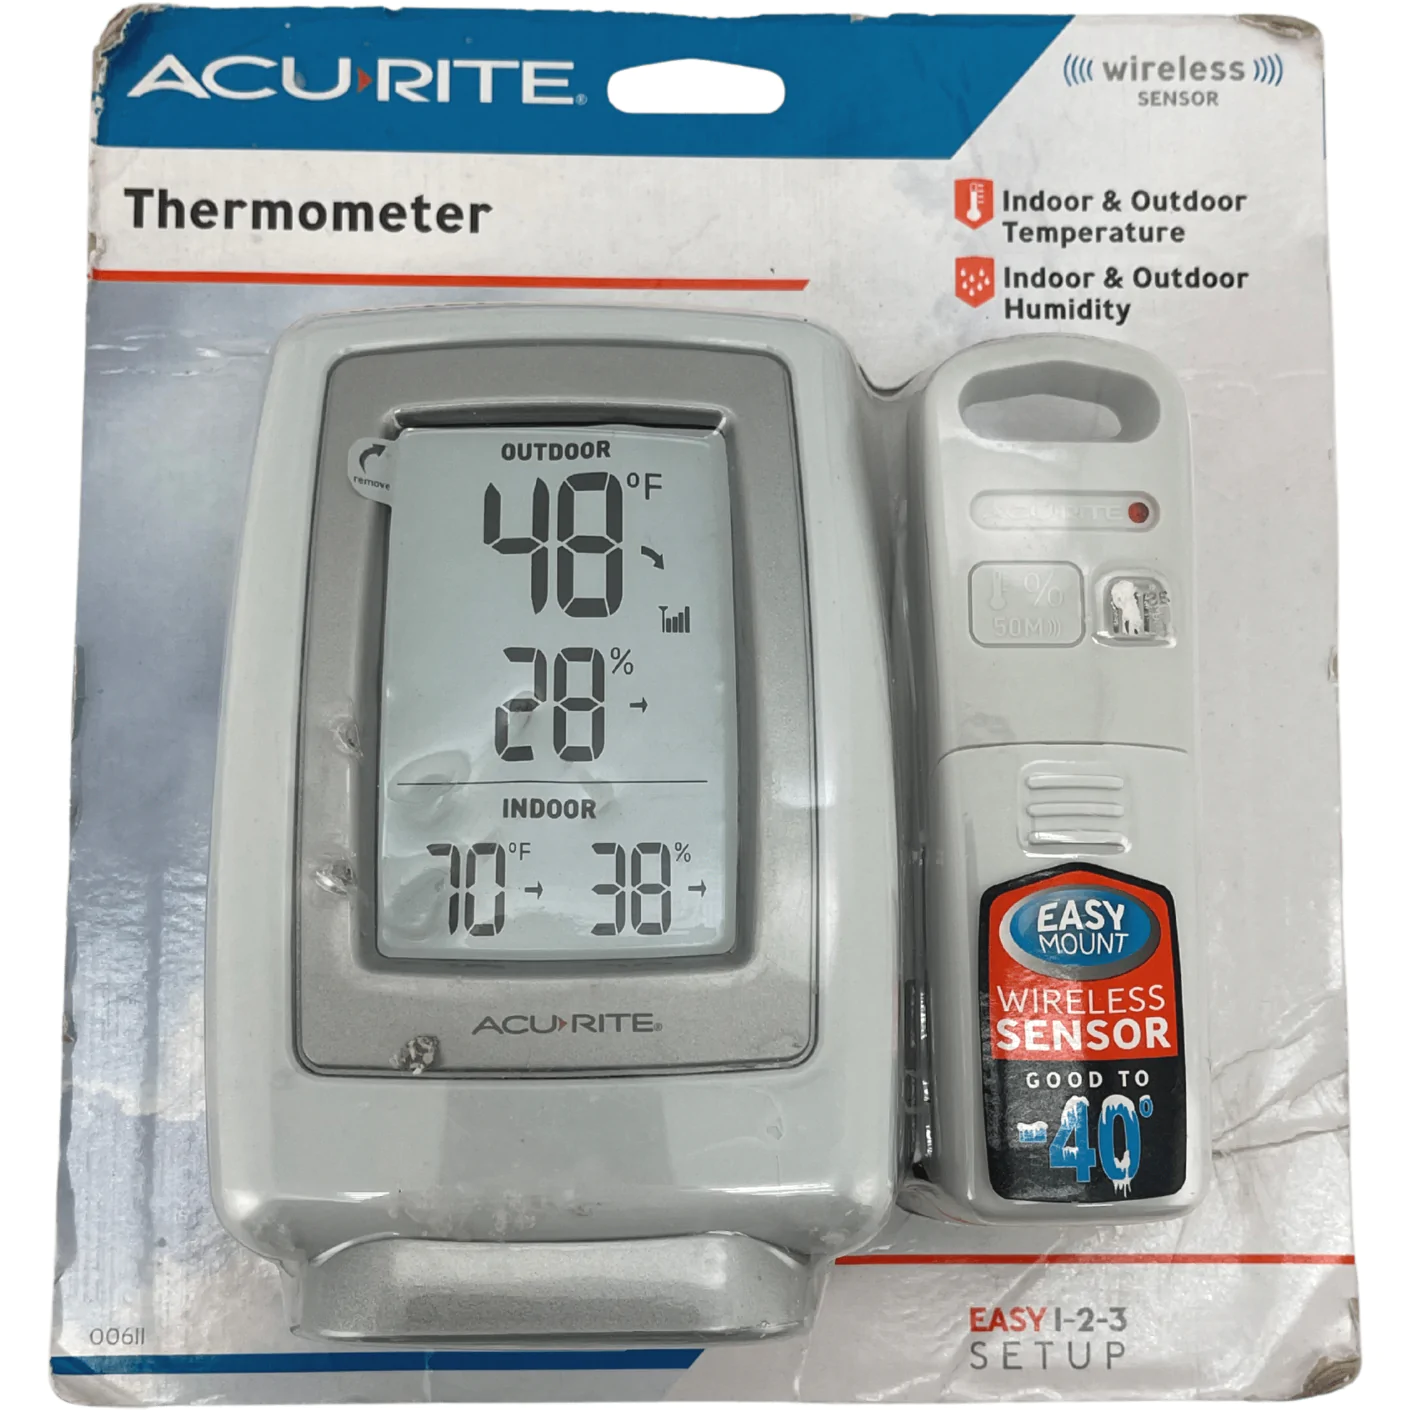 Acurite Thermometer / Indoor & Outdoor Temperature / Digital Display / Wireless Sensor **DEALS**